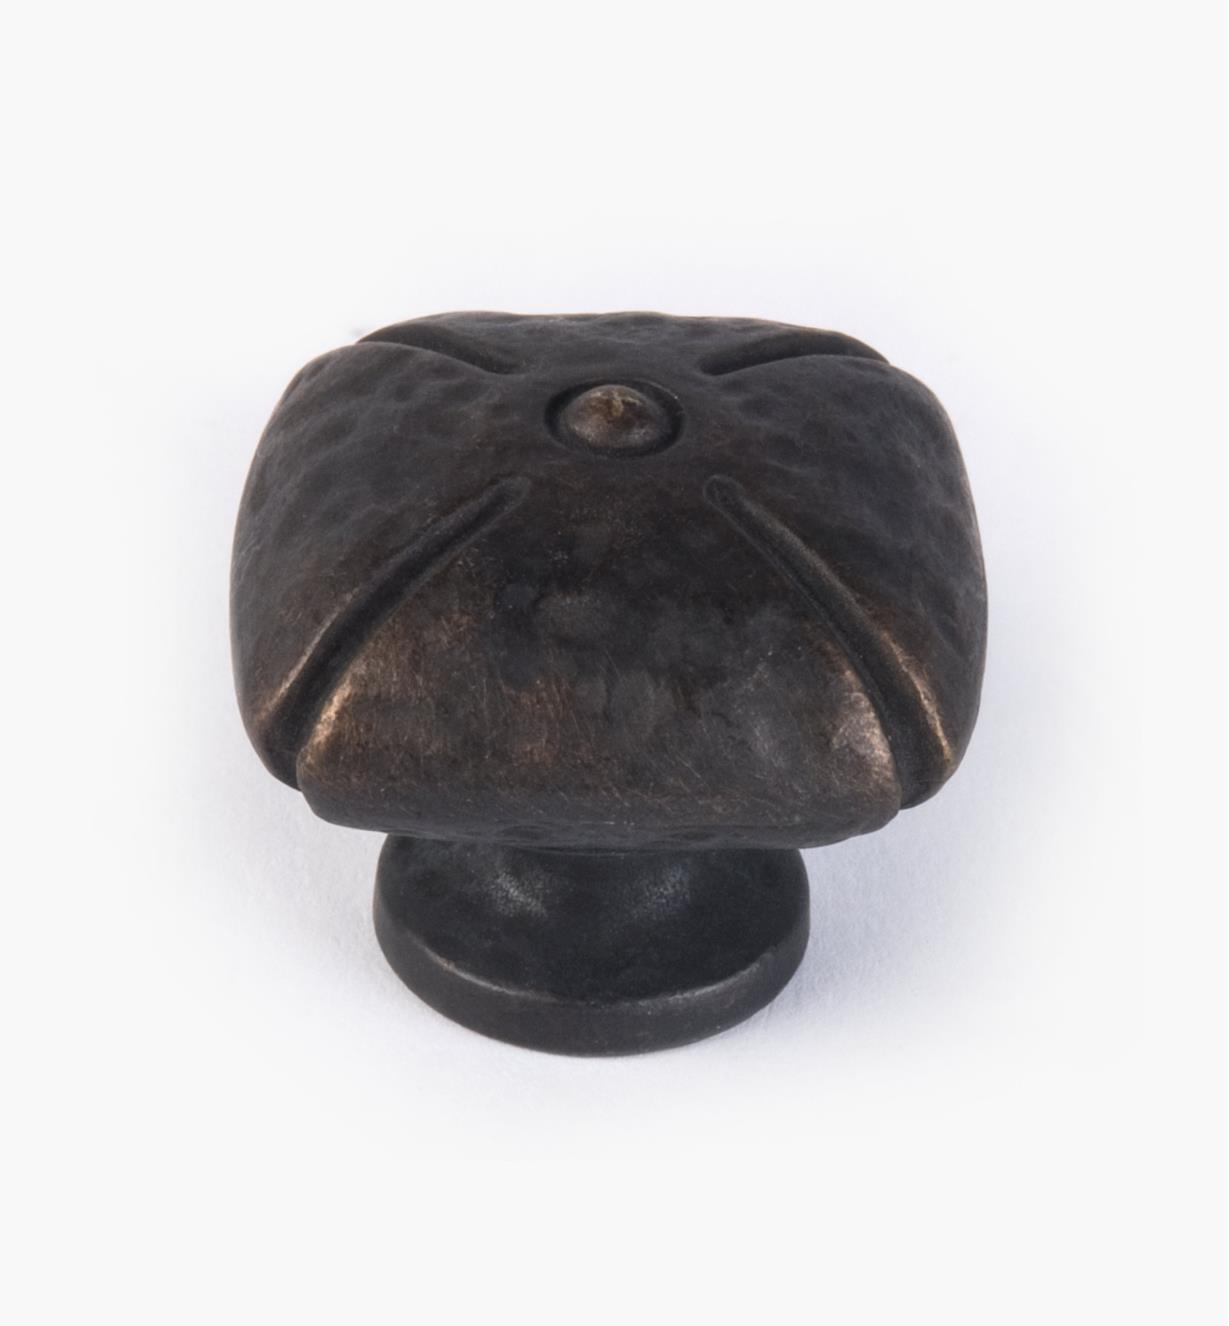 02A5171 - Bouton carré, série Sienne classique, fini bronze antique, 1 3/8 po